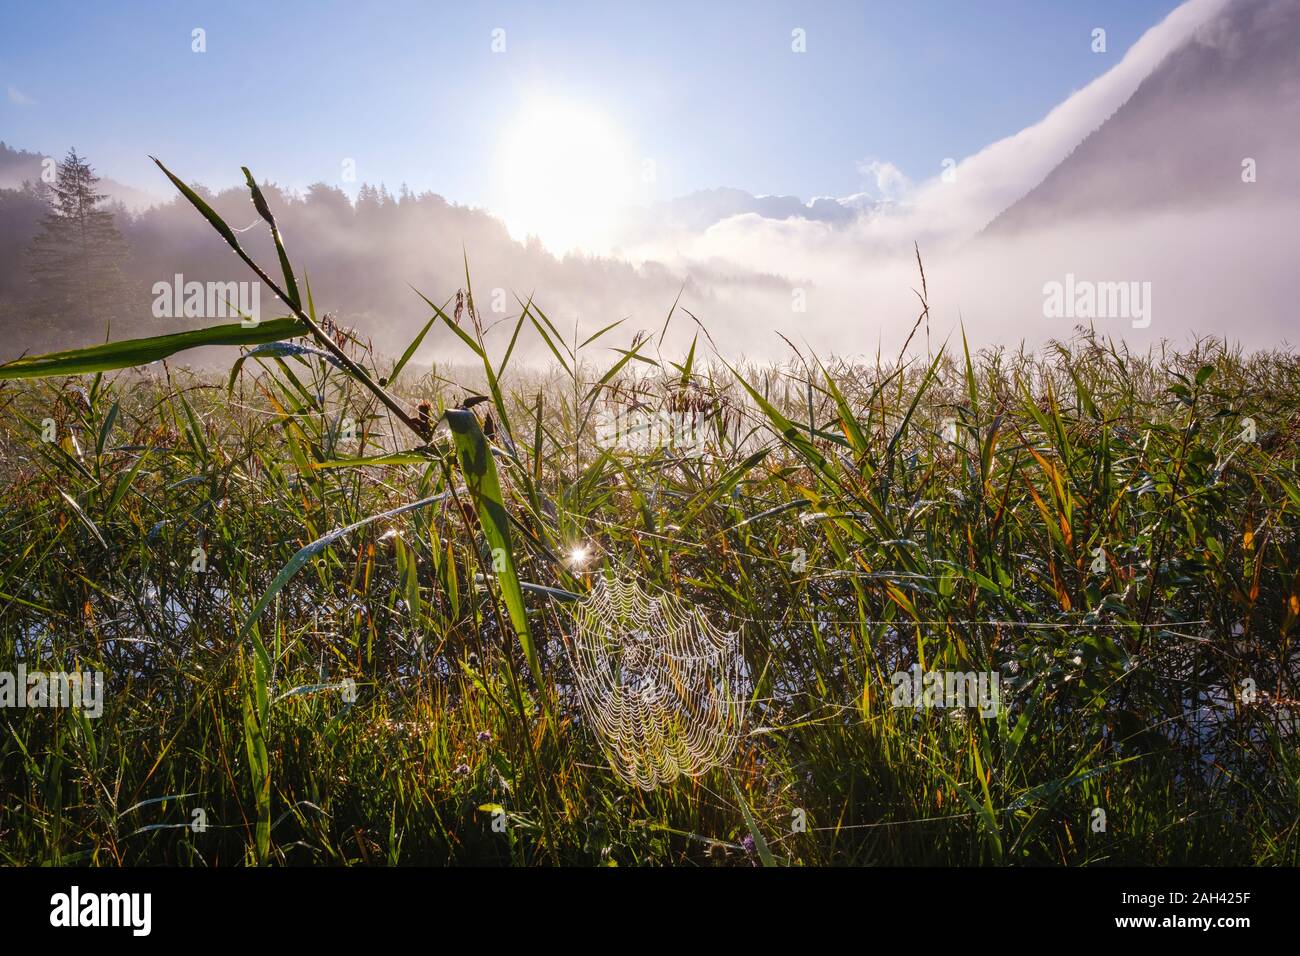 Germany, Bavaria, Mittenwald, Spider web suspendu entre roseaux poussant dans Ferchensee Misty Lake au lever du soleil Banque D'Images